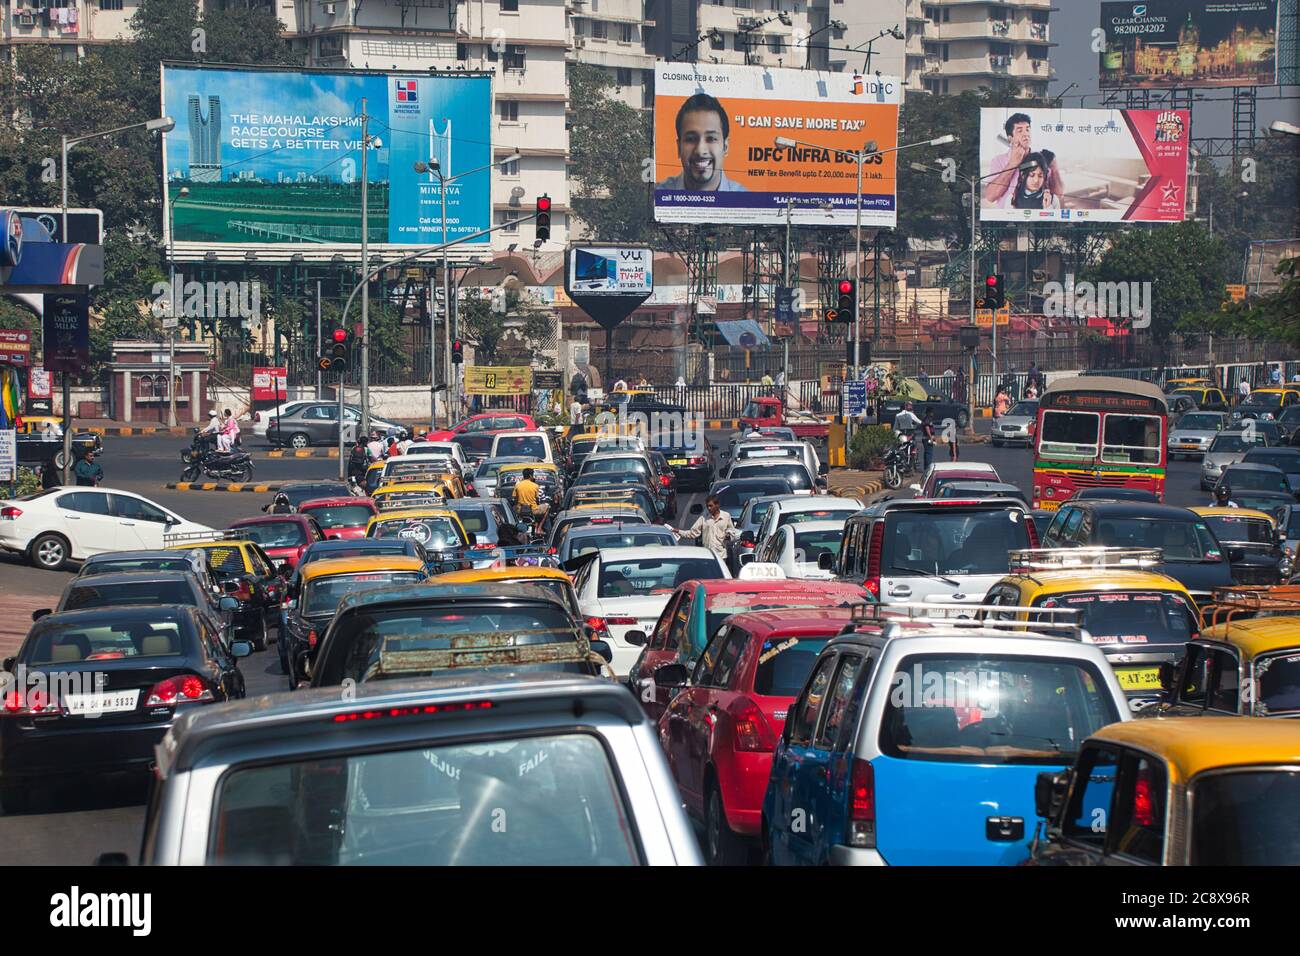 Mumbai, conosciuta anche come Bombay nello stato del Maharashtra in India, mostra una strada ostruita dal traffico con pubblicità in lontananza Foto Stock